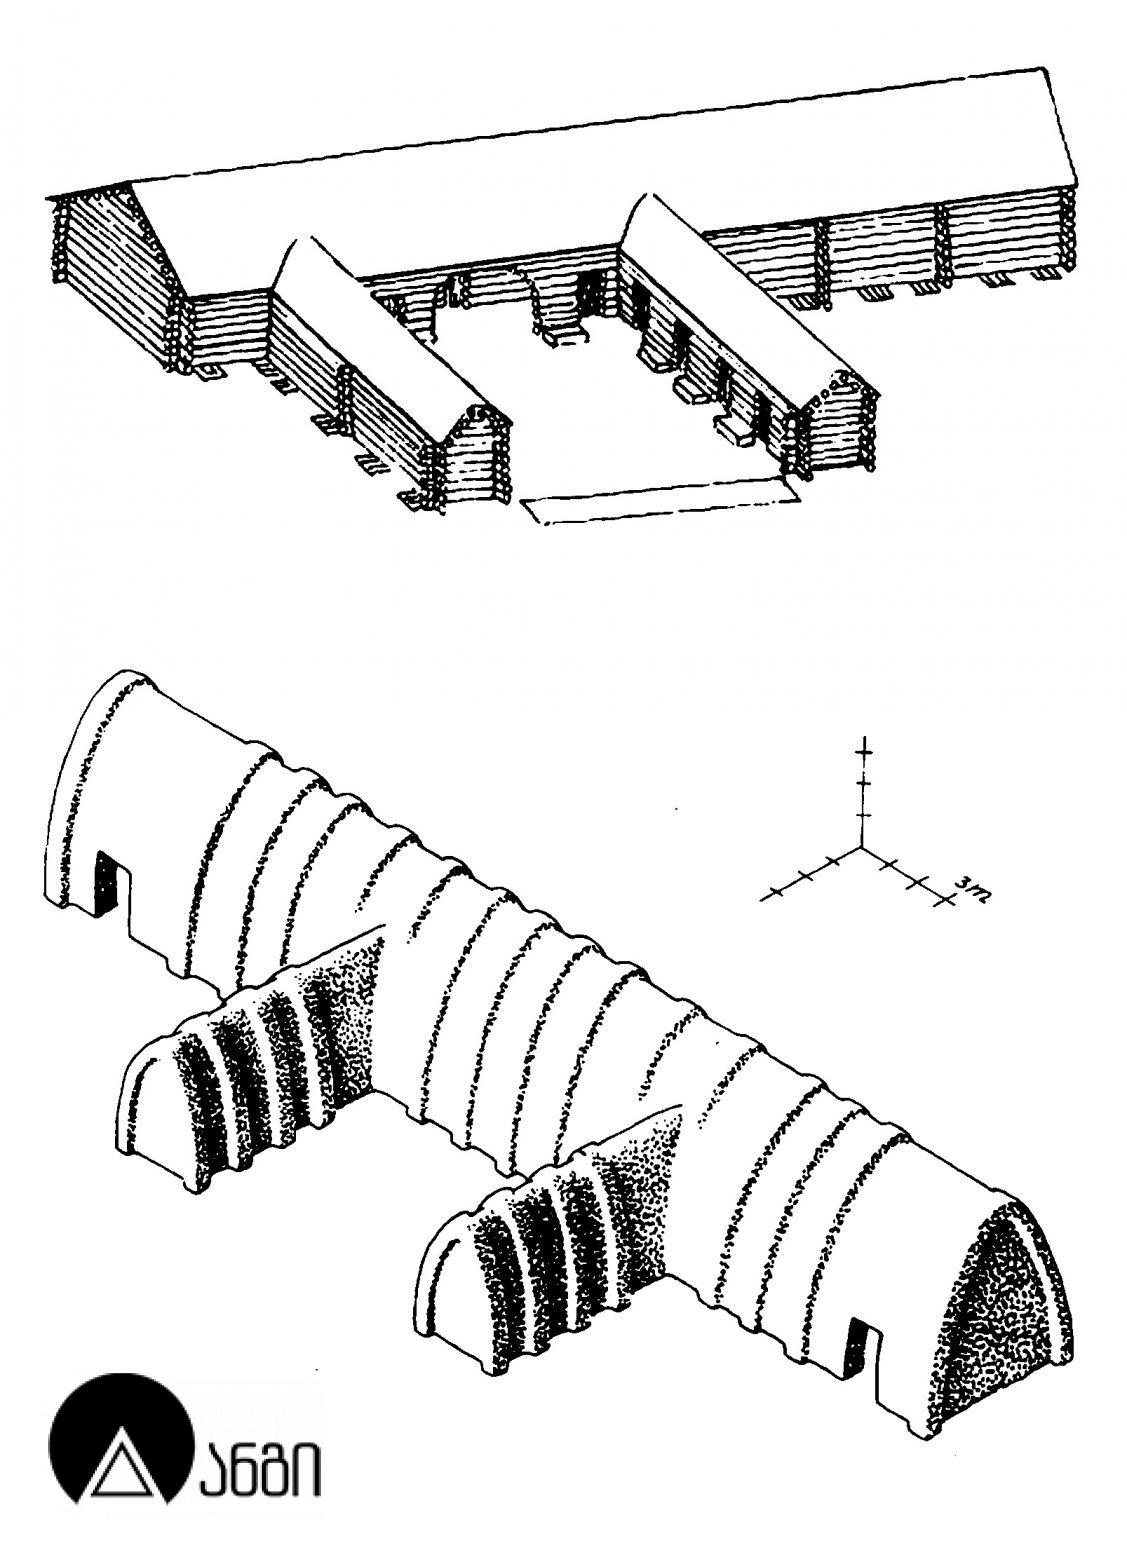 ვანის ნაქალაქარი (ვანის არქეოლოგიური მუზეუმი)